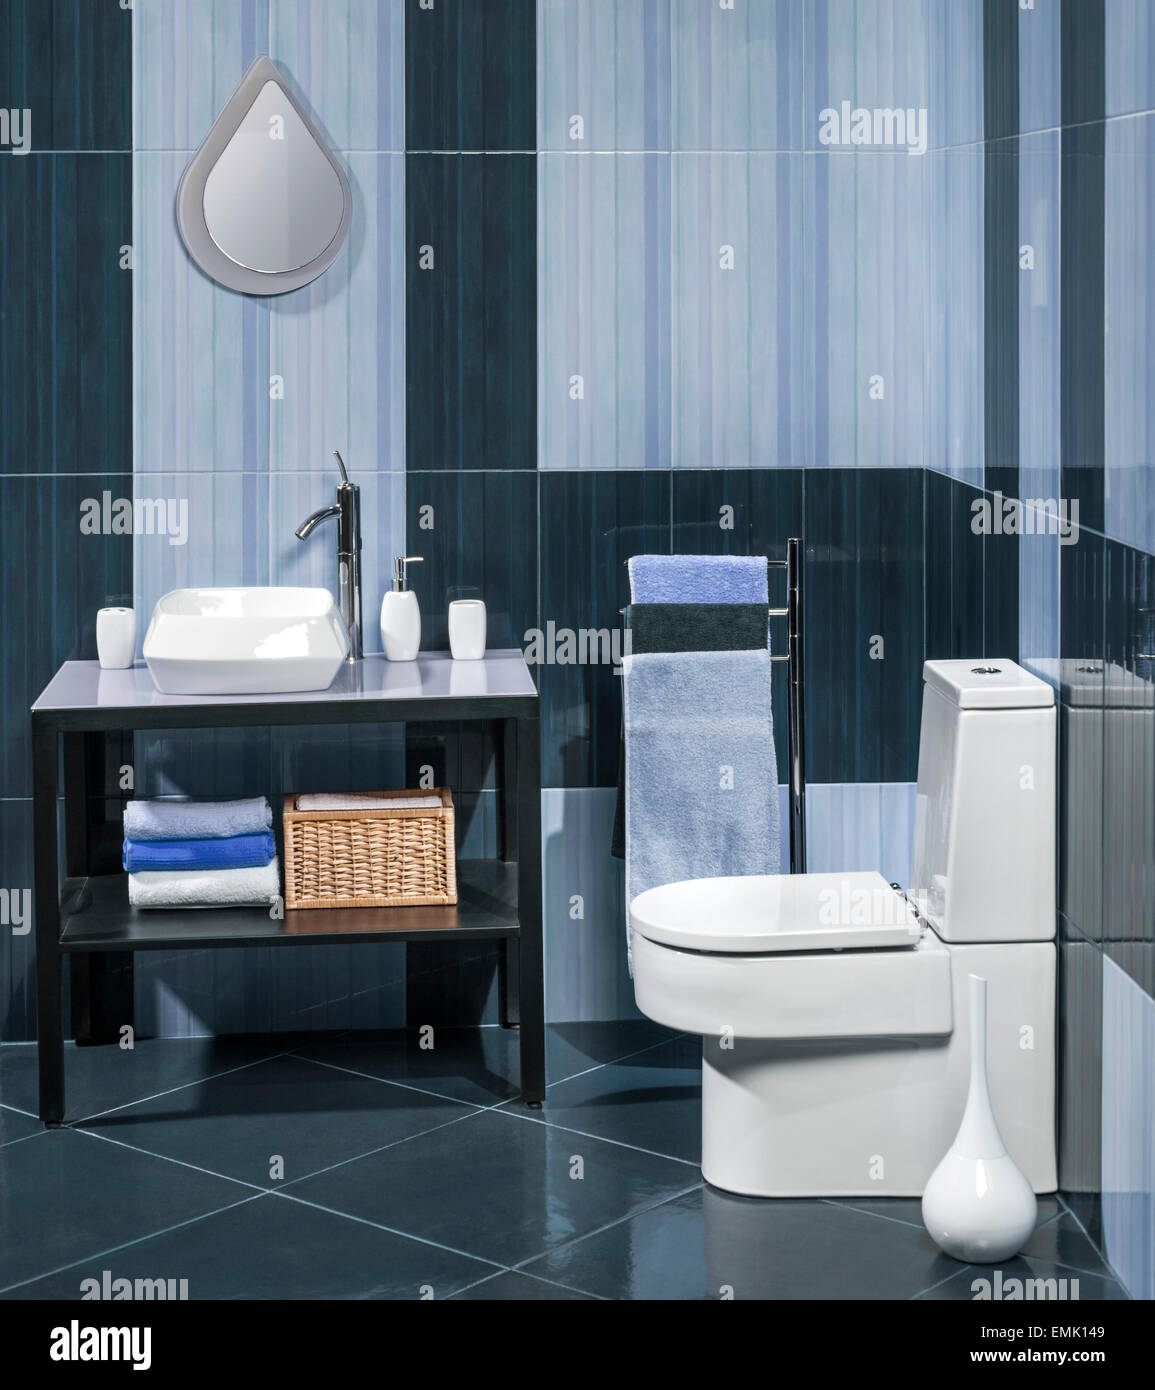 Détail d'une salle de bains moderne avec lavabo, cabinet de toilettes et des serviettes Banque D'Images